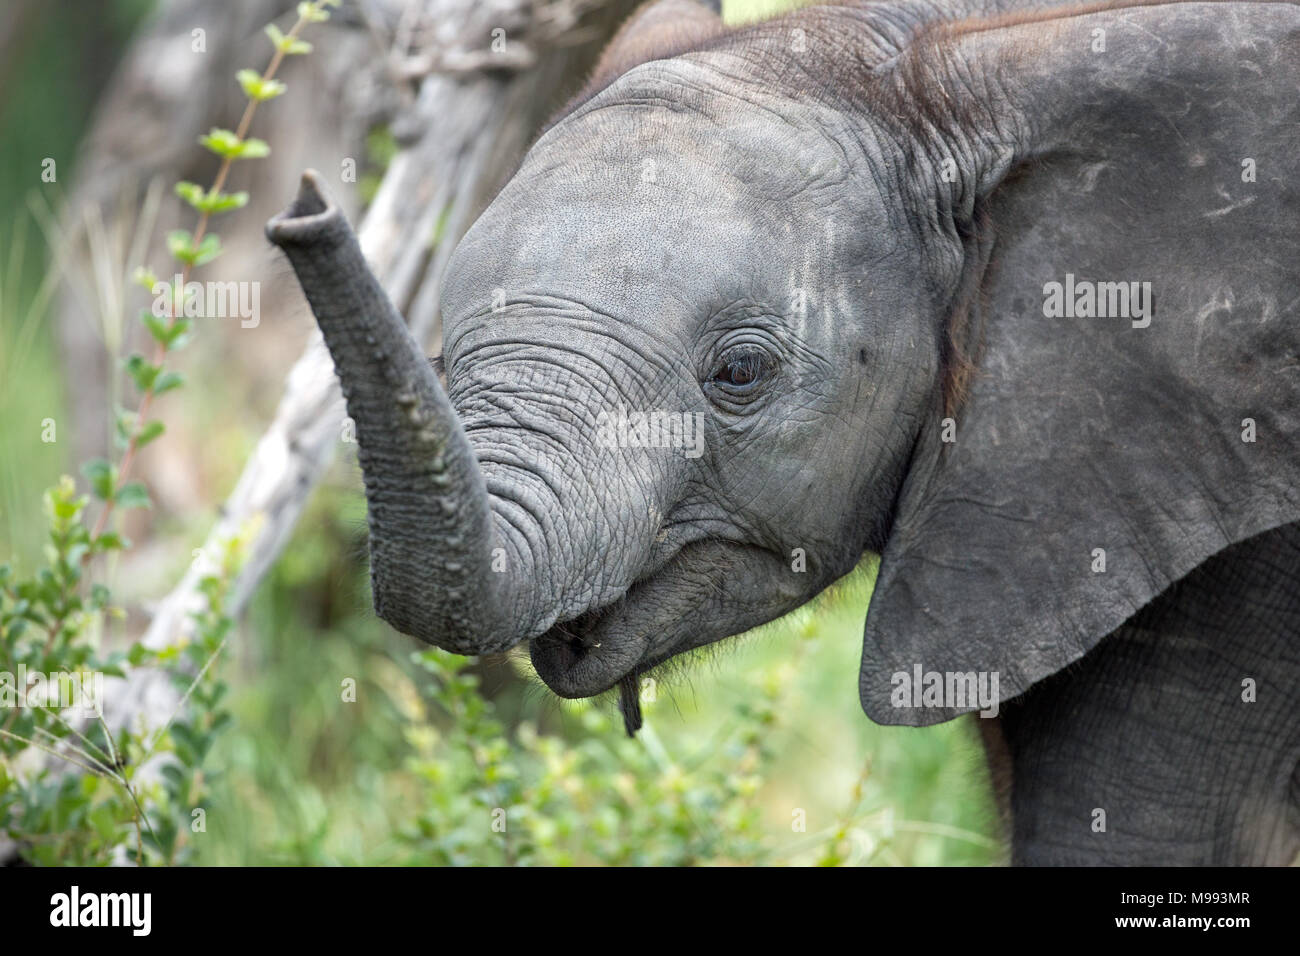 Afrikanischer Elefant (Loxodonta africana). Kalb mit trunk Tipp zu erreichen untersuchen Strauch Laub und. Chobe National Park. Okavango Delta. Botswana. Af Stockfoto